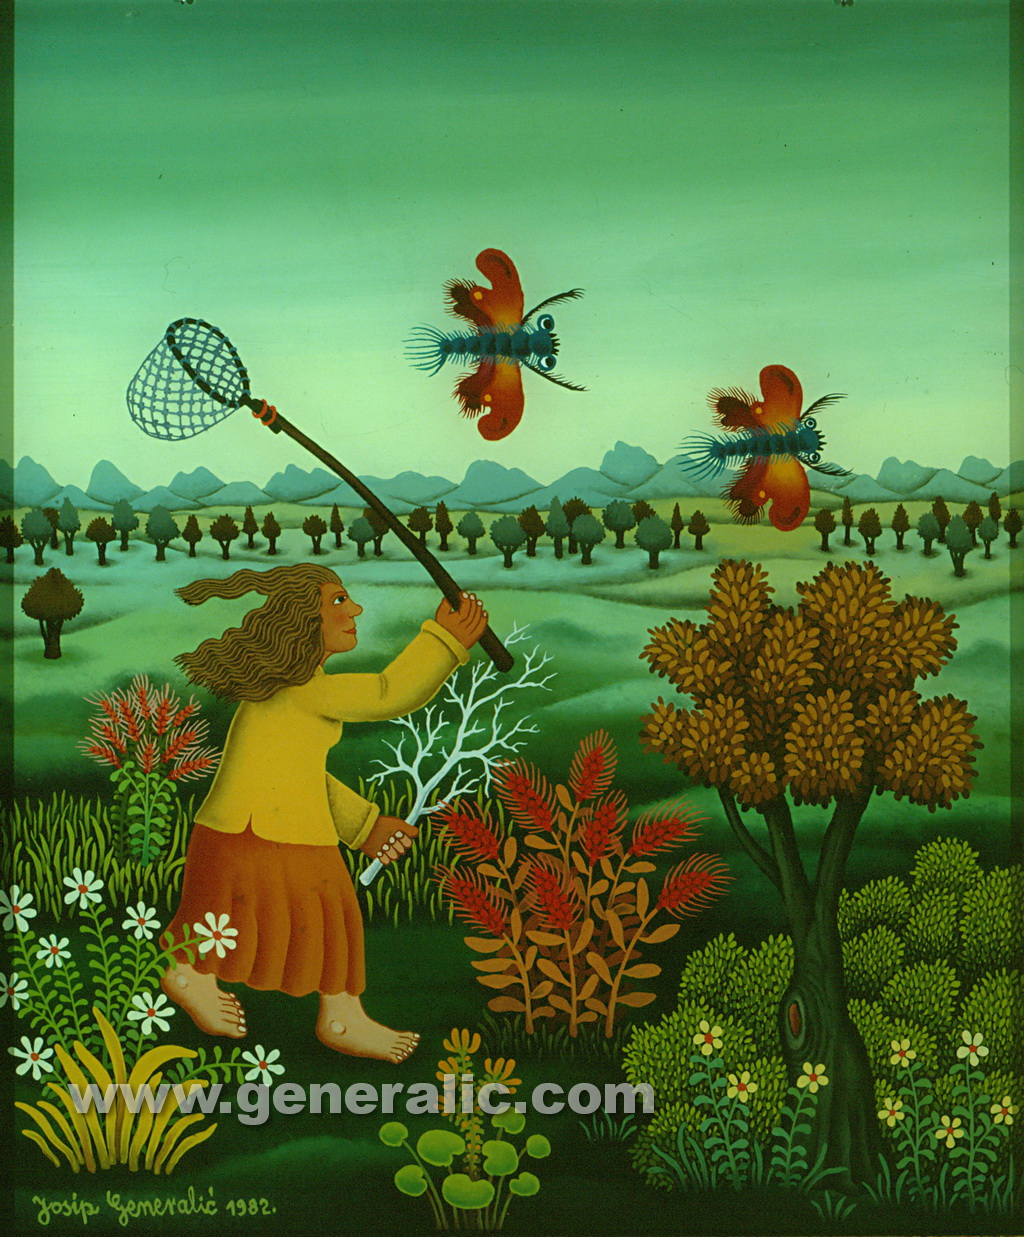 Josip Generalic, 1982, Chasing butterflies, oil on glass, 42x35 cm